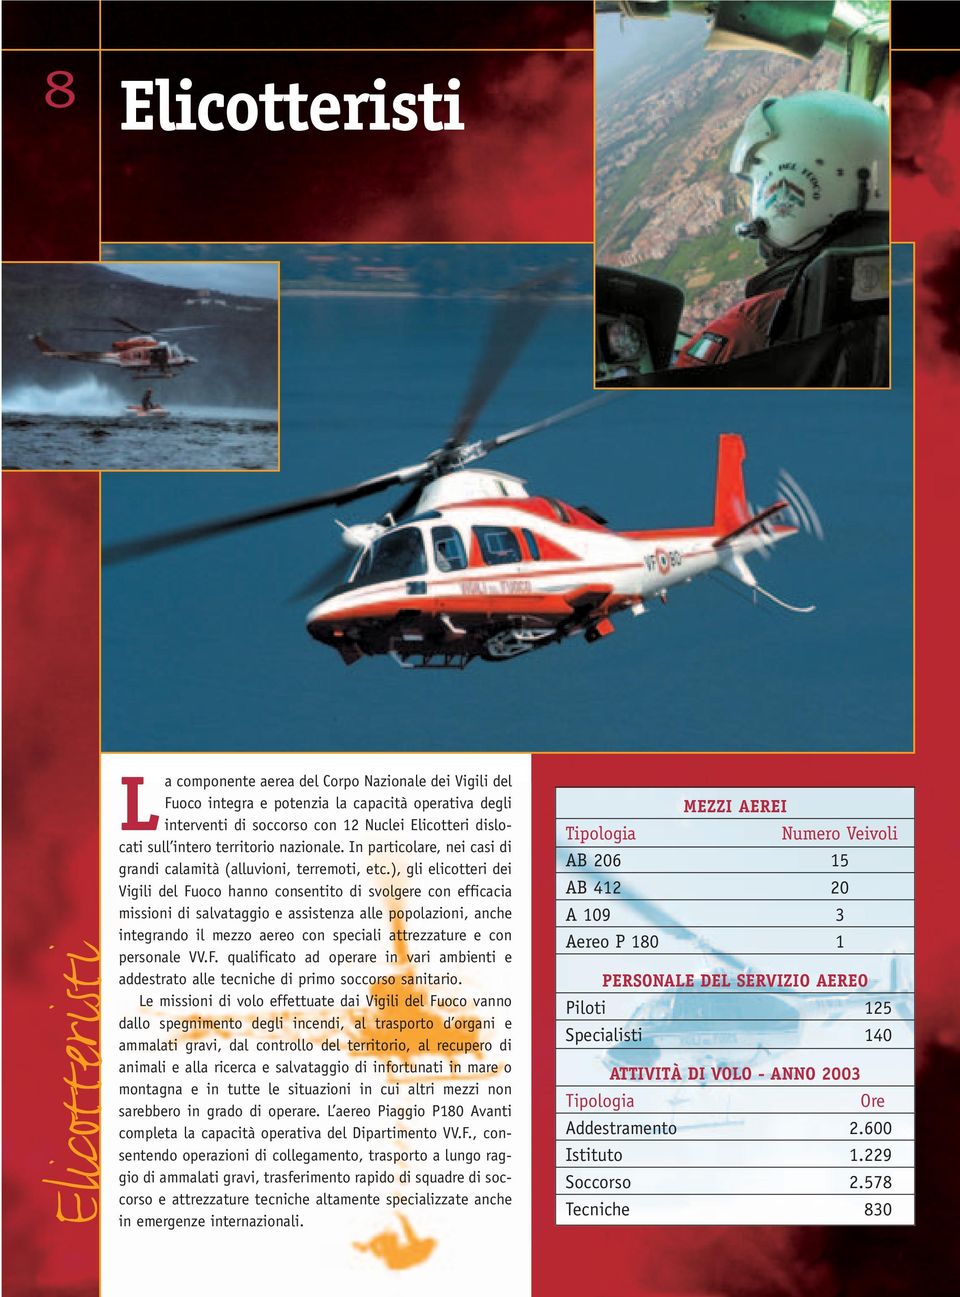 ), gli elicotteri dei Vigili del Fuoco hanno consentito di svolgere con efficacia missioni di salvataggio e assistenza alle popolazioni, anche integrando il mezzo aereo con speciali attrezzature e